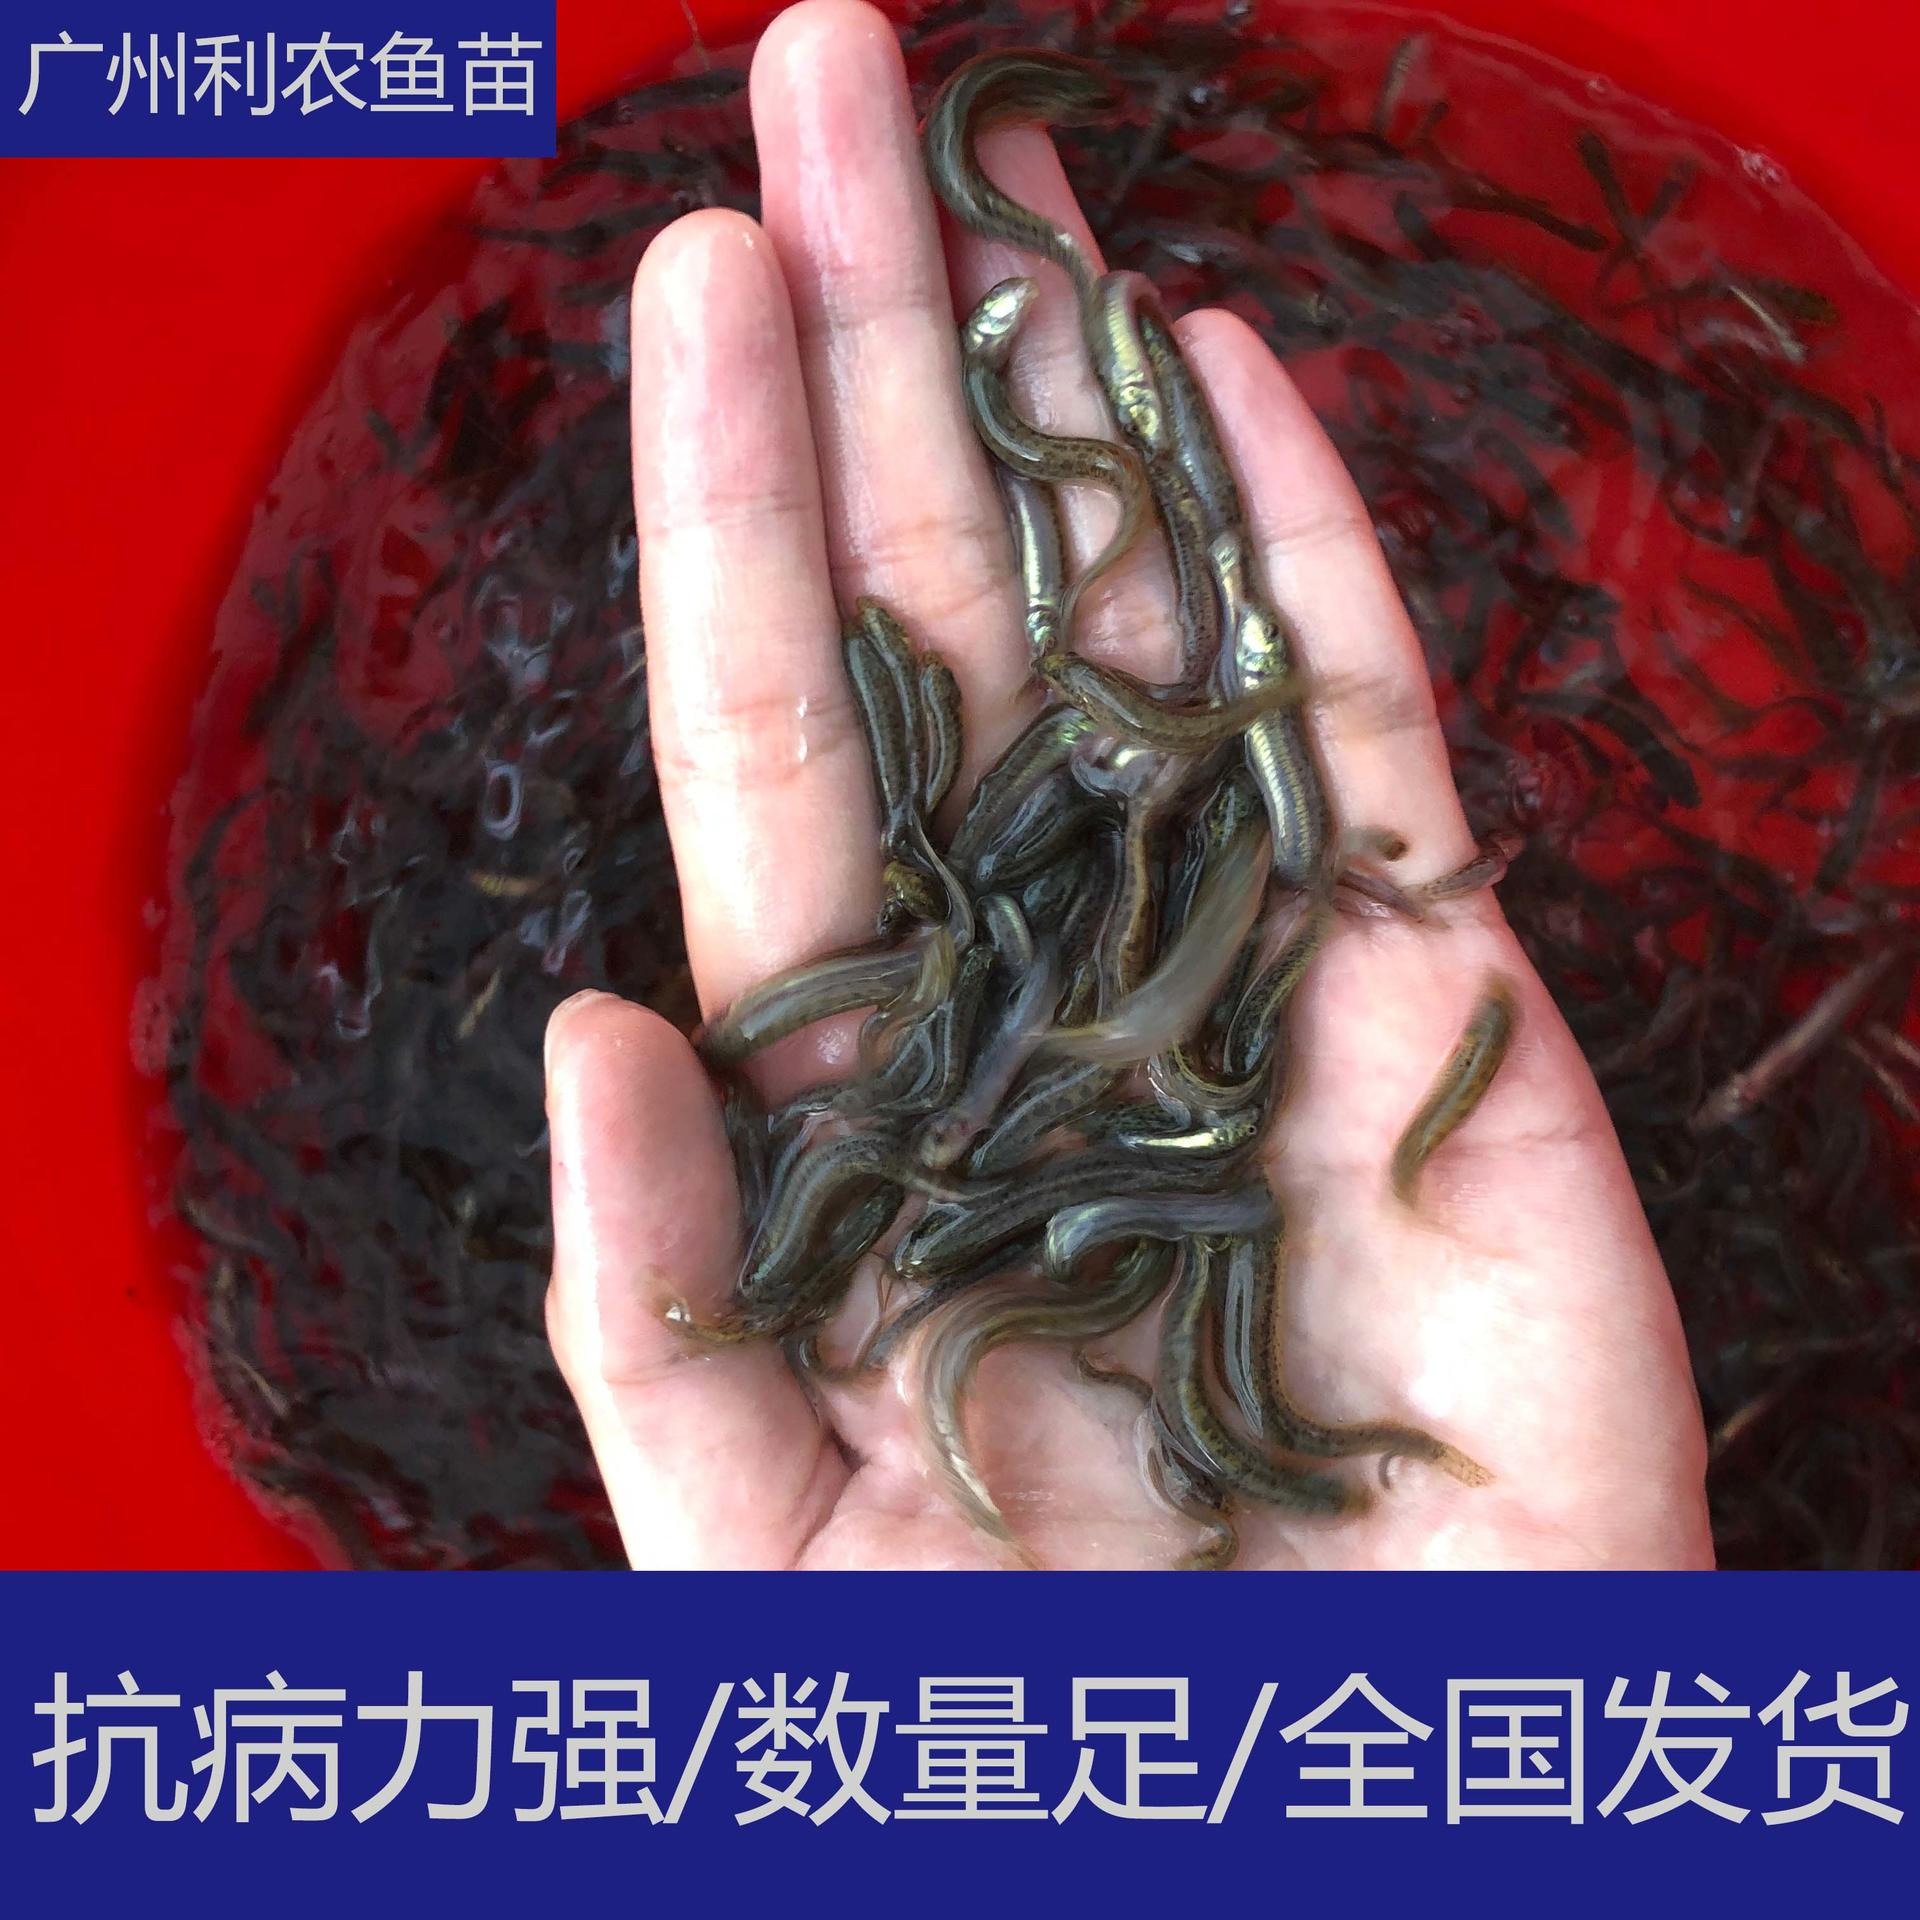 苗场直供 广东佛山台湾泥鳅苗出售 4-5cm泥鳅鱼苗养殖场